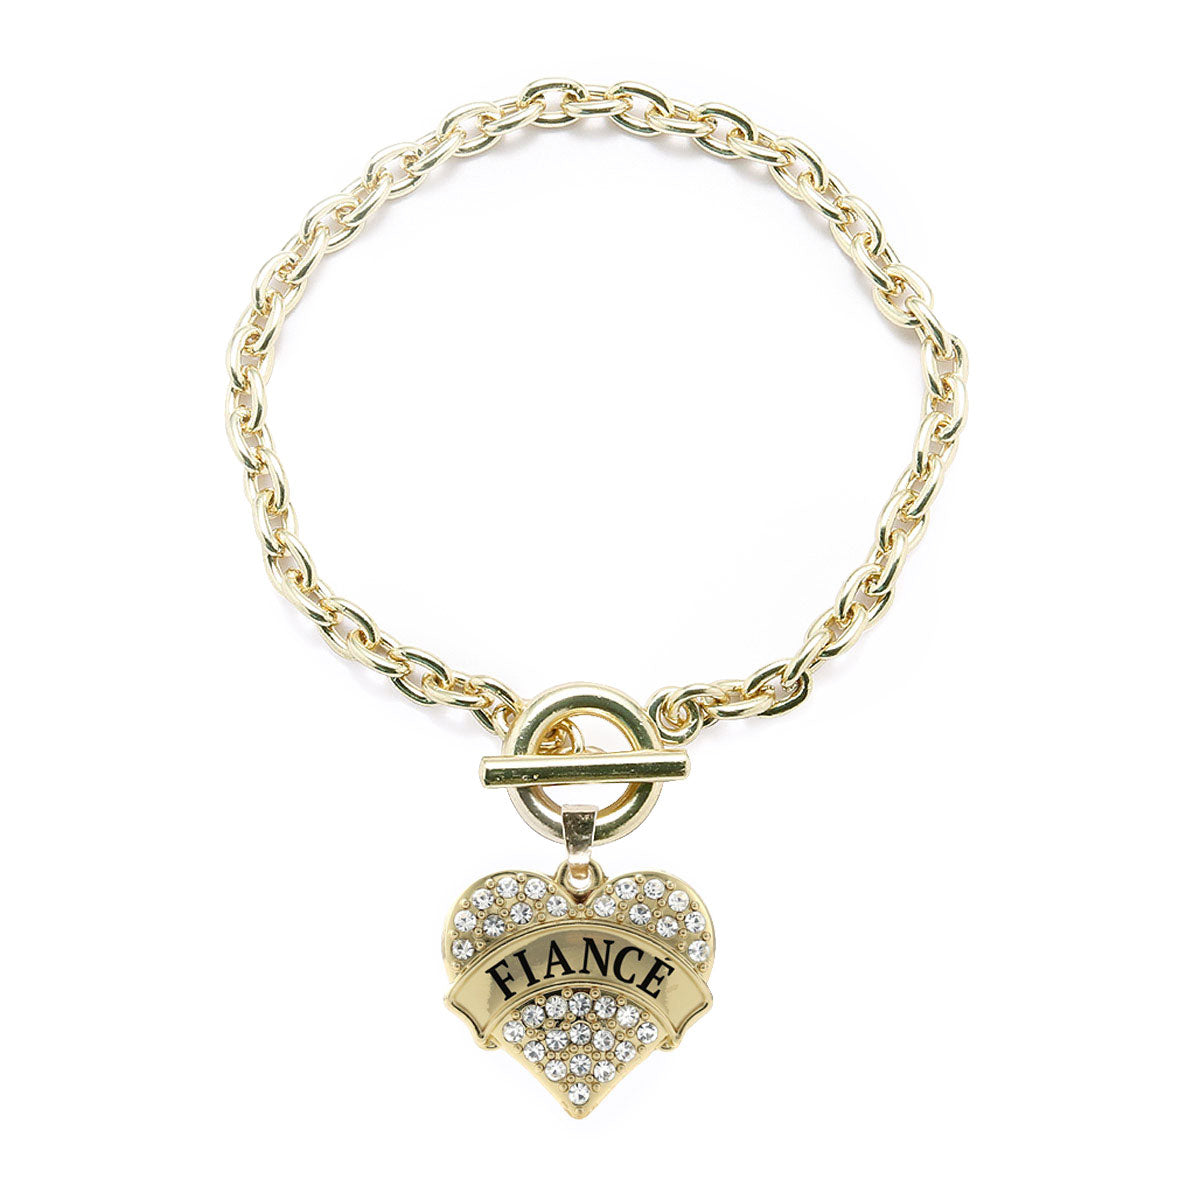 Gold Fiancé Pave Heart Charm Toggle Bracelet